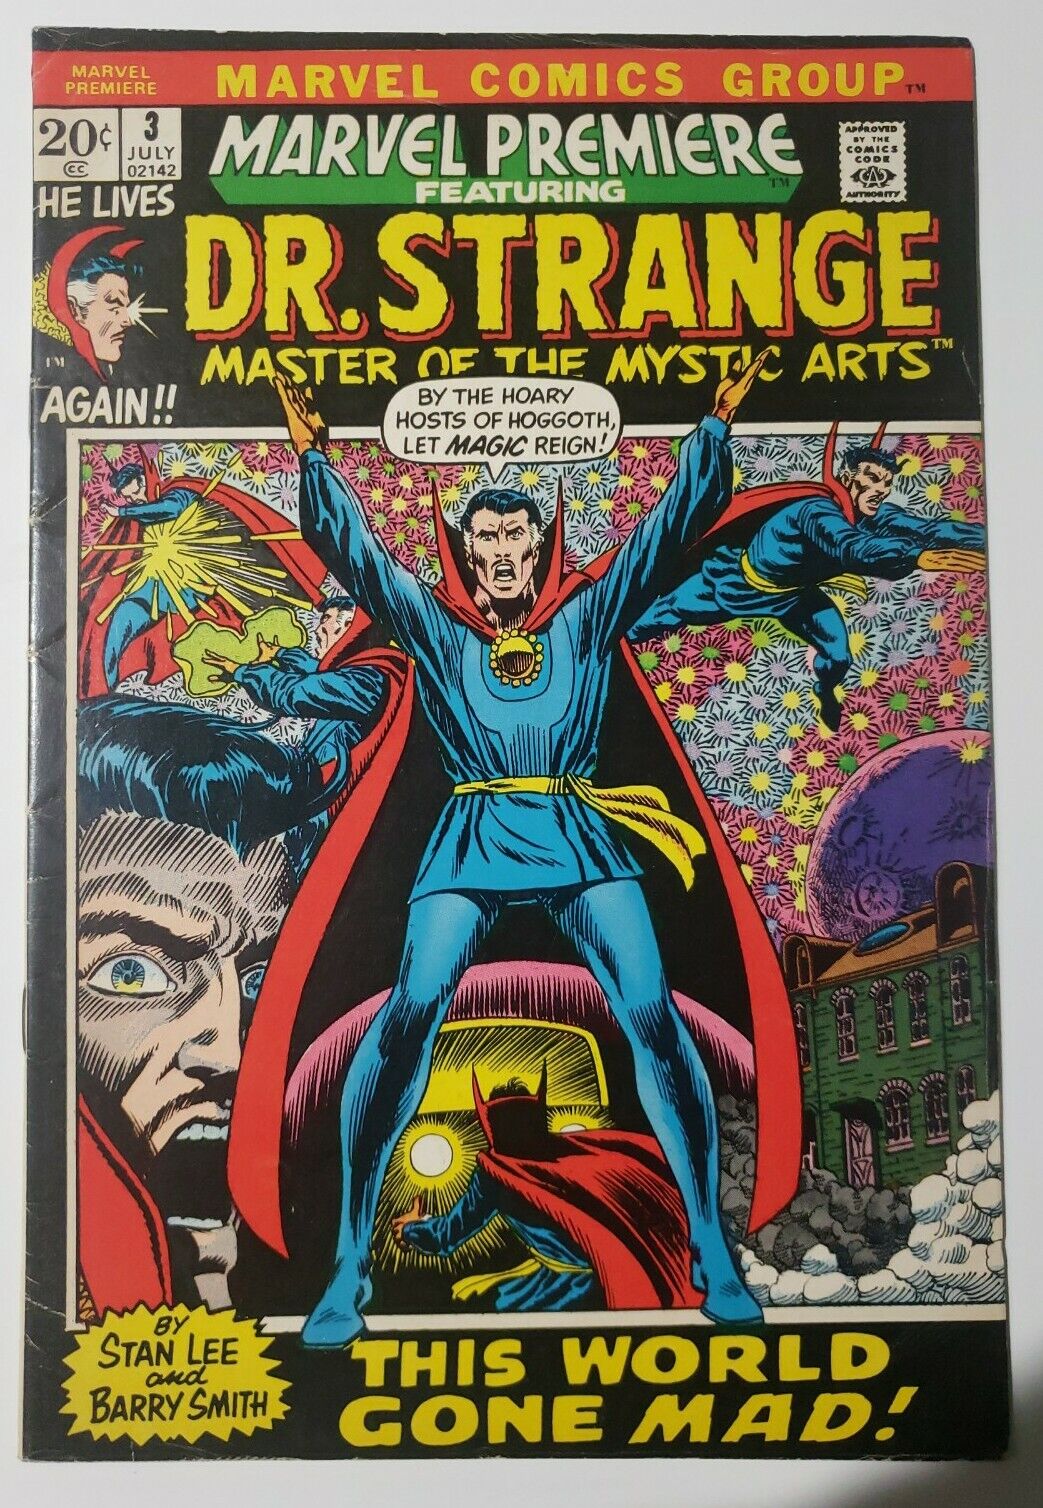 MARVEL PREMIERE #3(Marvel,1972) STAN LEE/BARRY WINDSOR SMITH Art. Dr. STRANGE F-